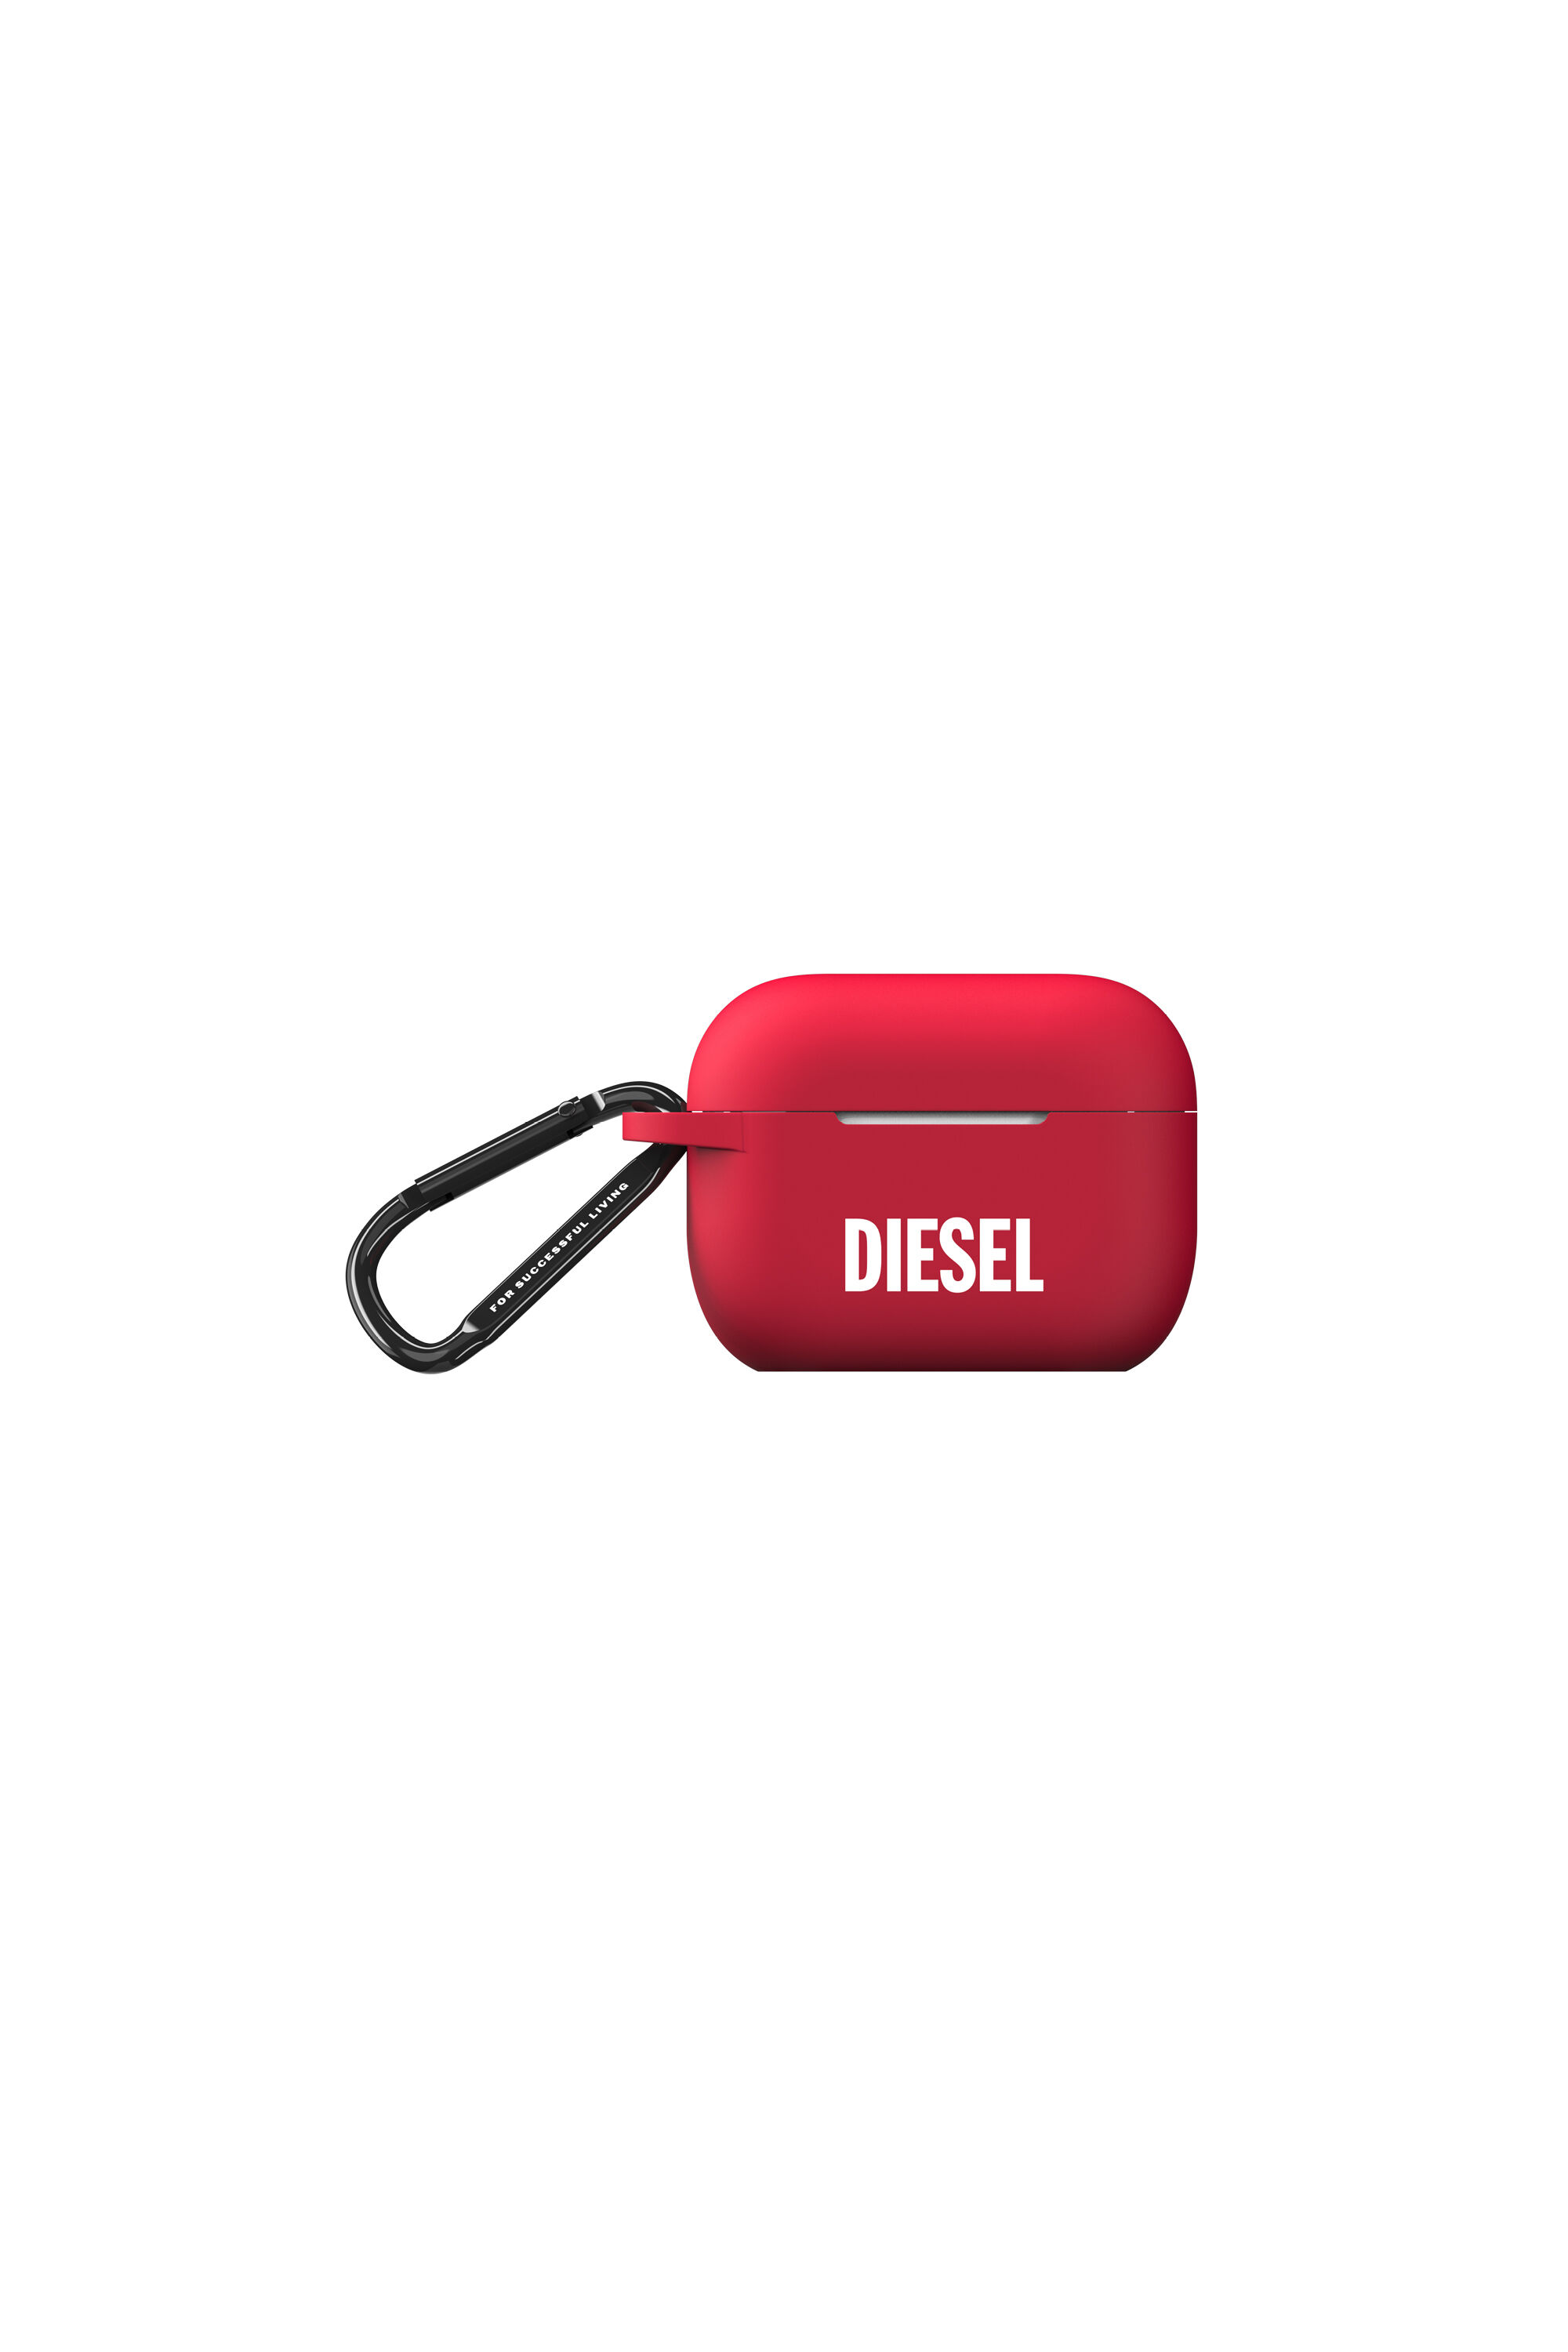 Diesel - 45837 AIRPOD CASE,  - Image 1